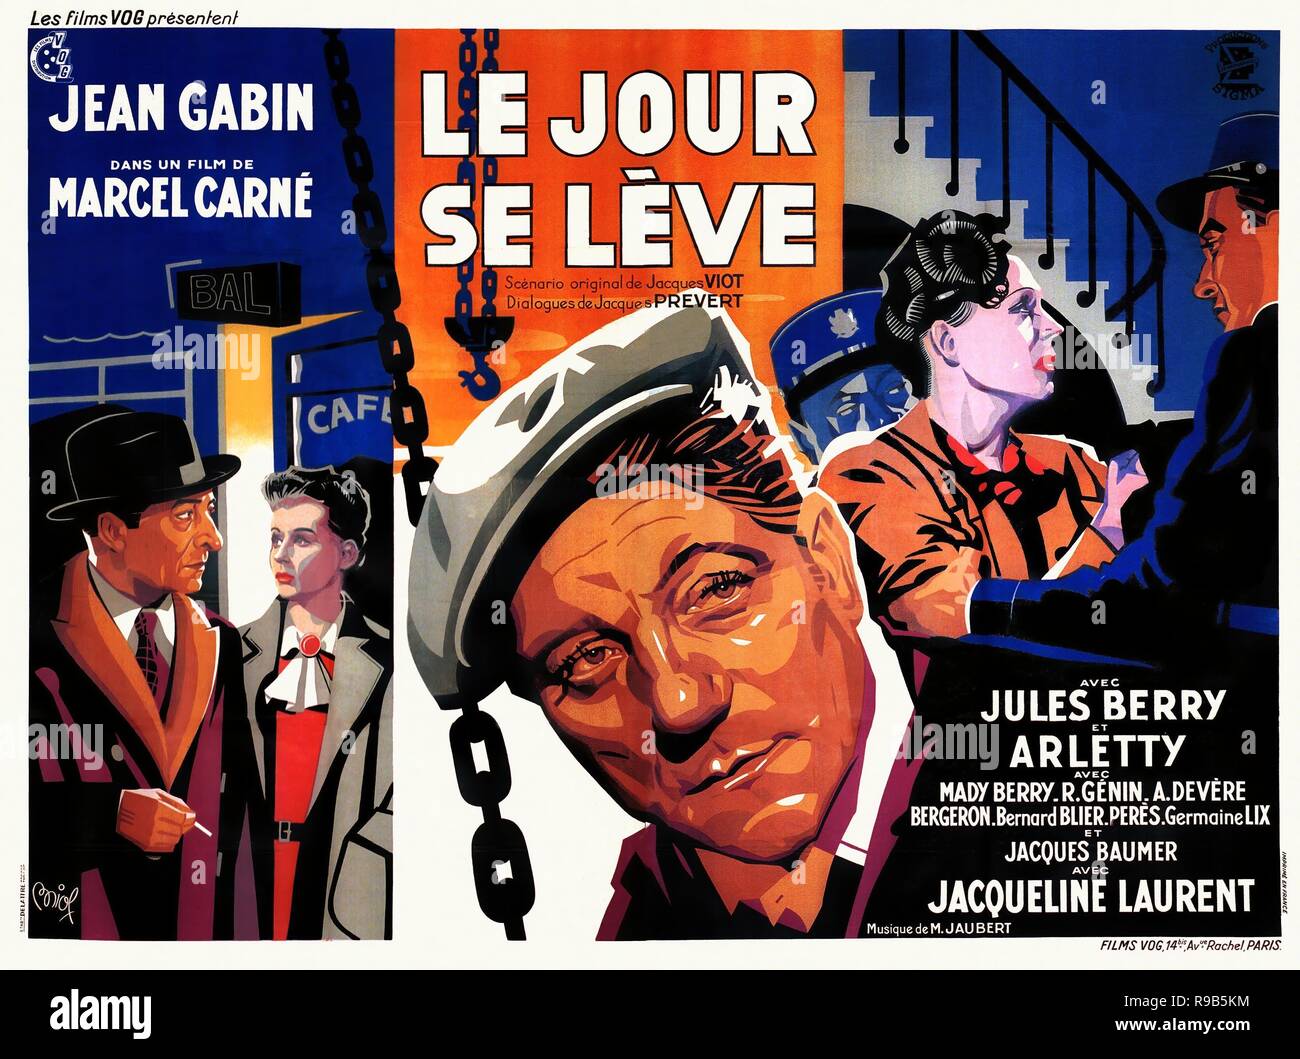 Le Jour Se Leve Daybreak  Marcel Carne, Raymond Voinquel, Jacques Prevert  Jacques Viot